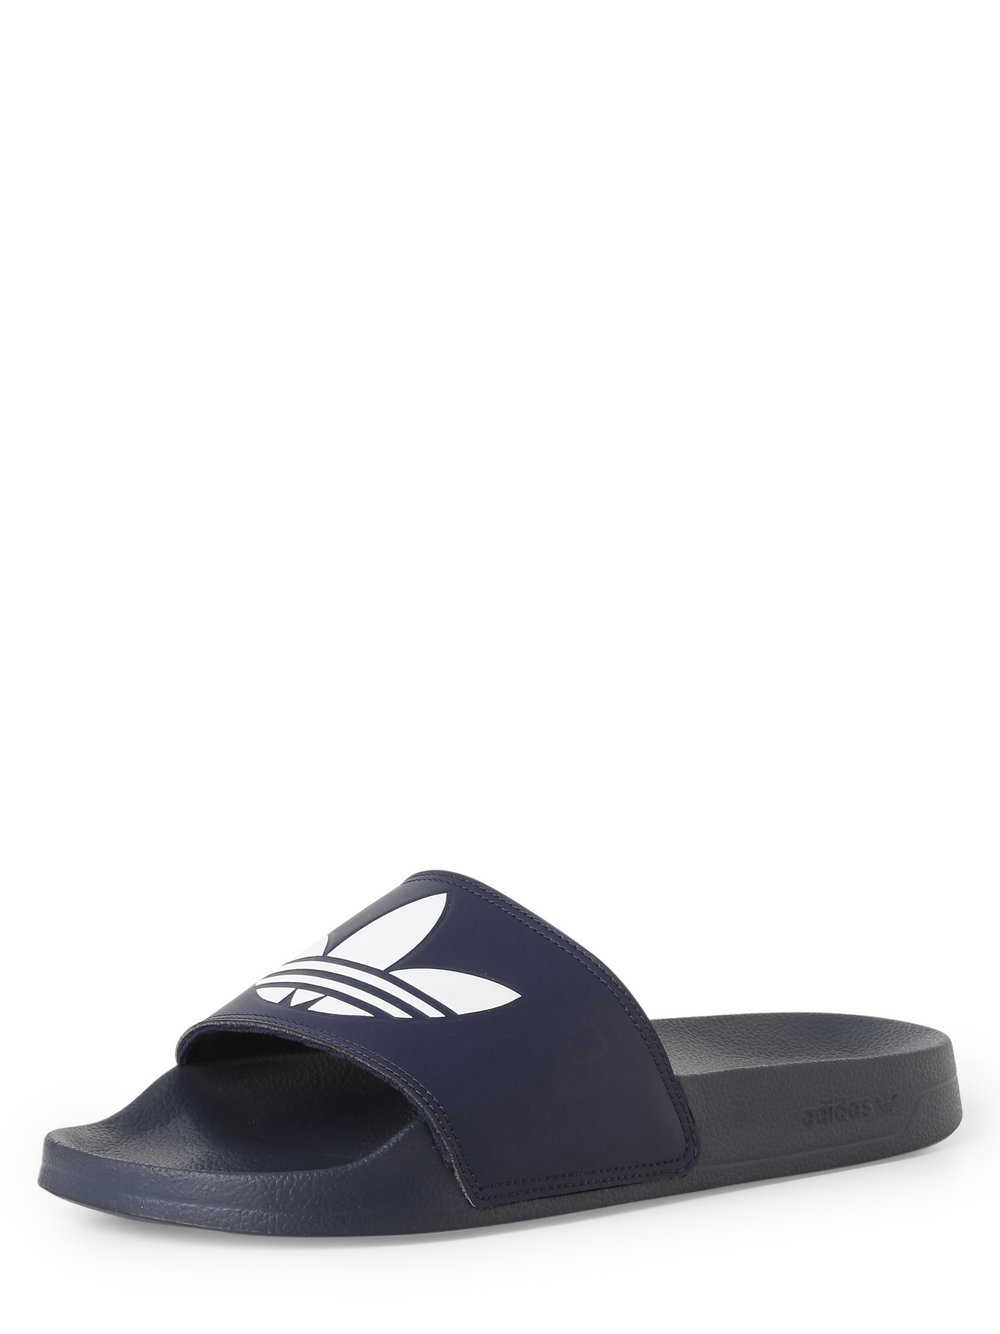 Adidas Originals - Męskie pantofle kąpielowe, niebieski